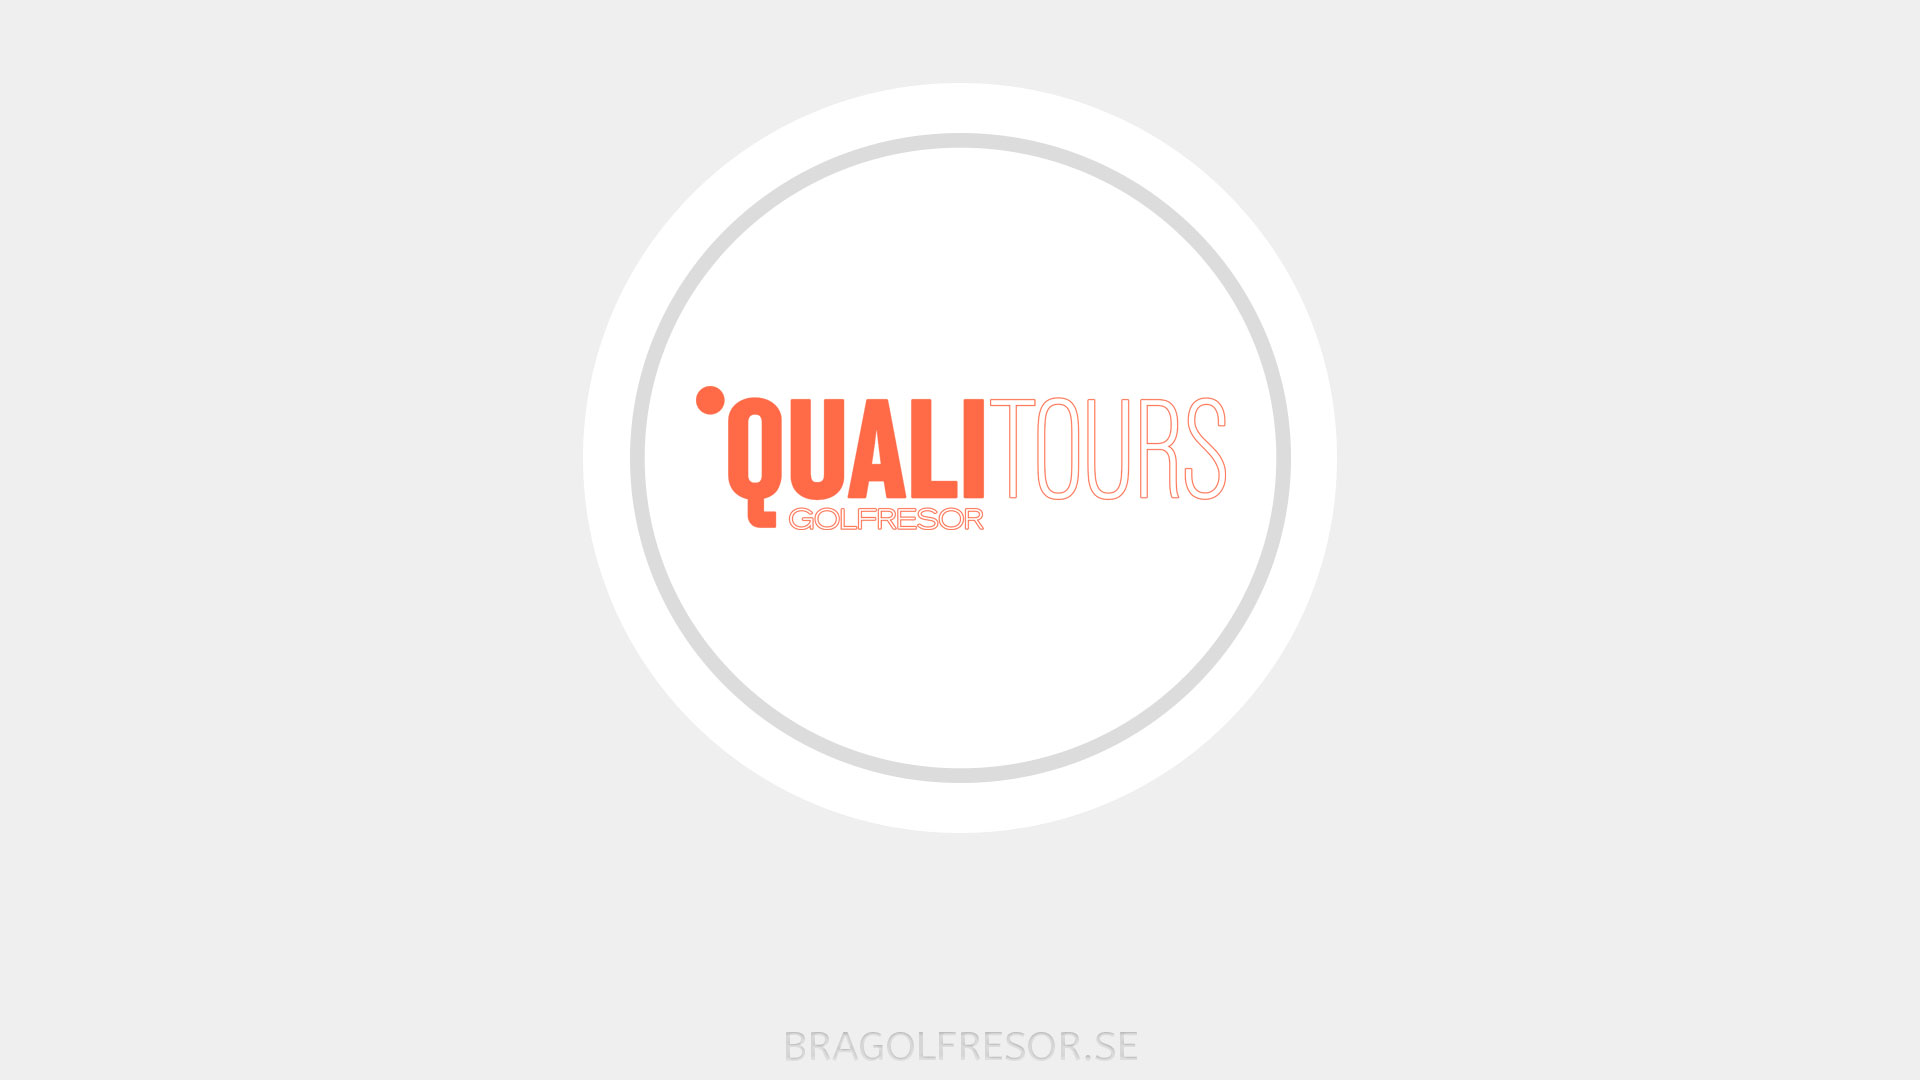 Qualitours